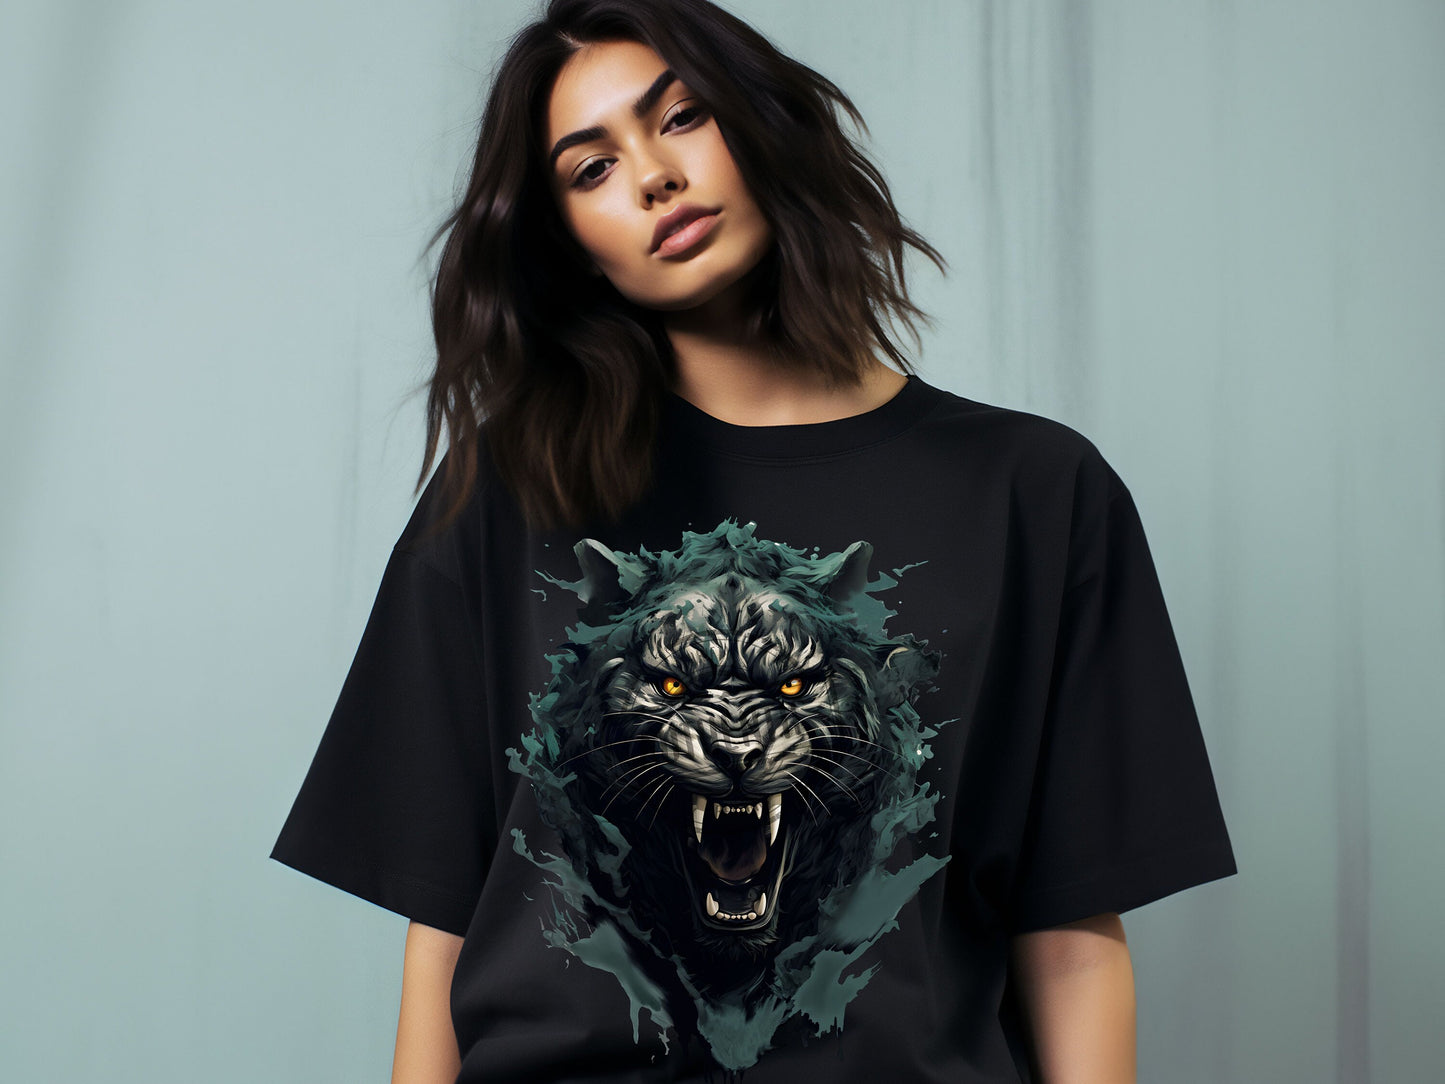 Black Panther png dtf Designs, dtf images, sublimate designs, png file for sublimate, shirt designs, dtf png, sublimate designs png